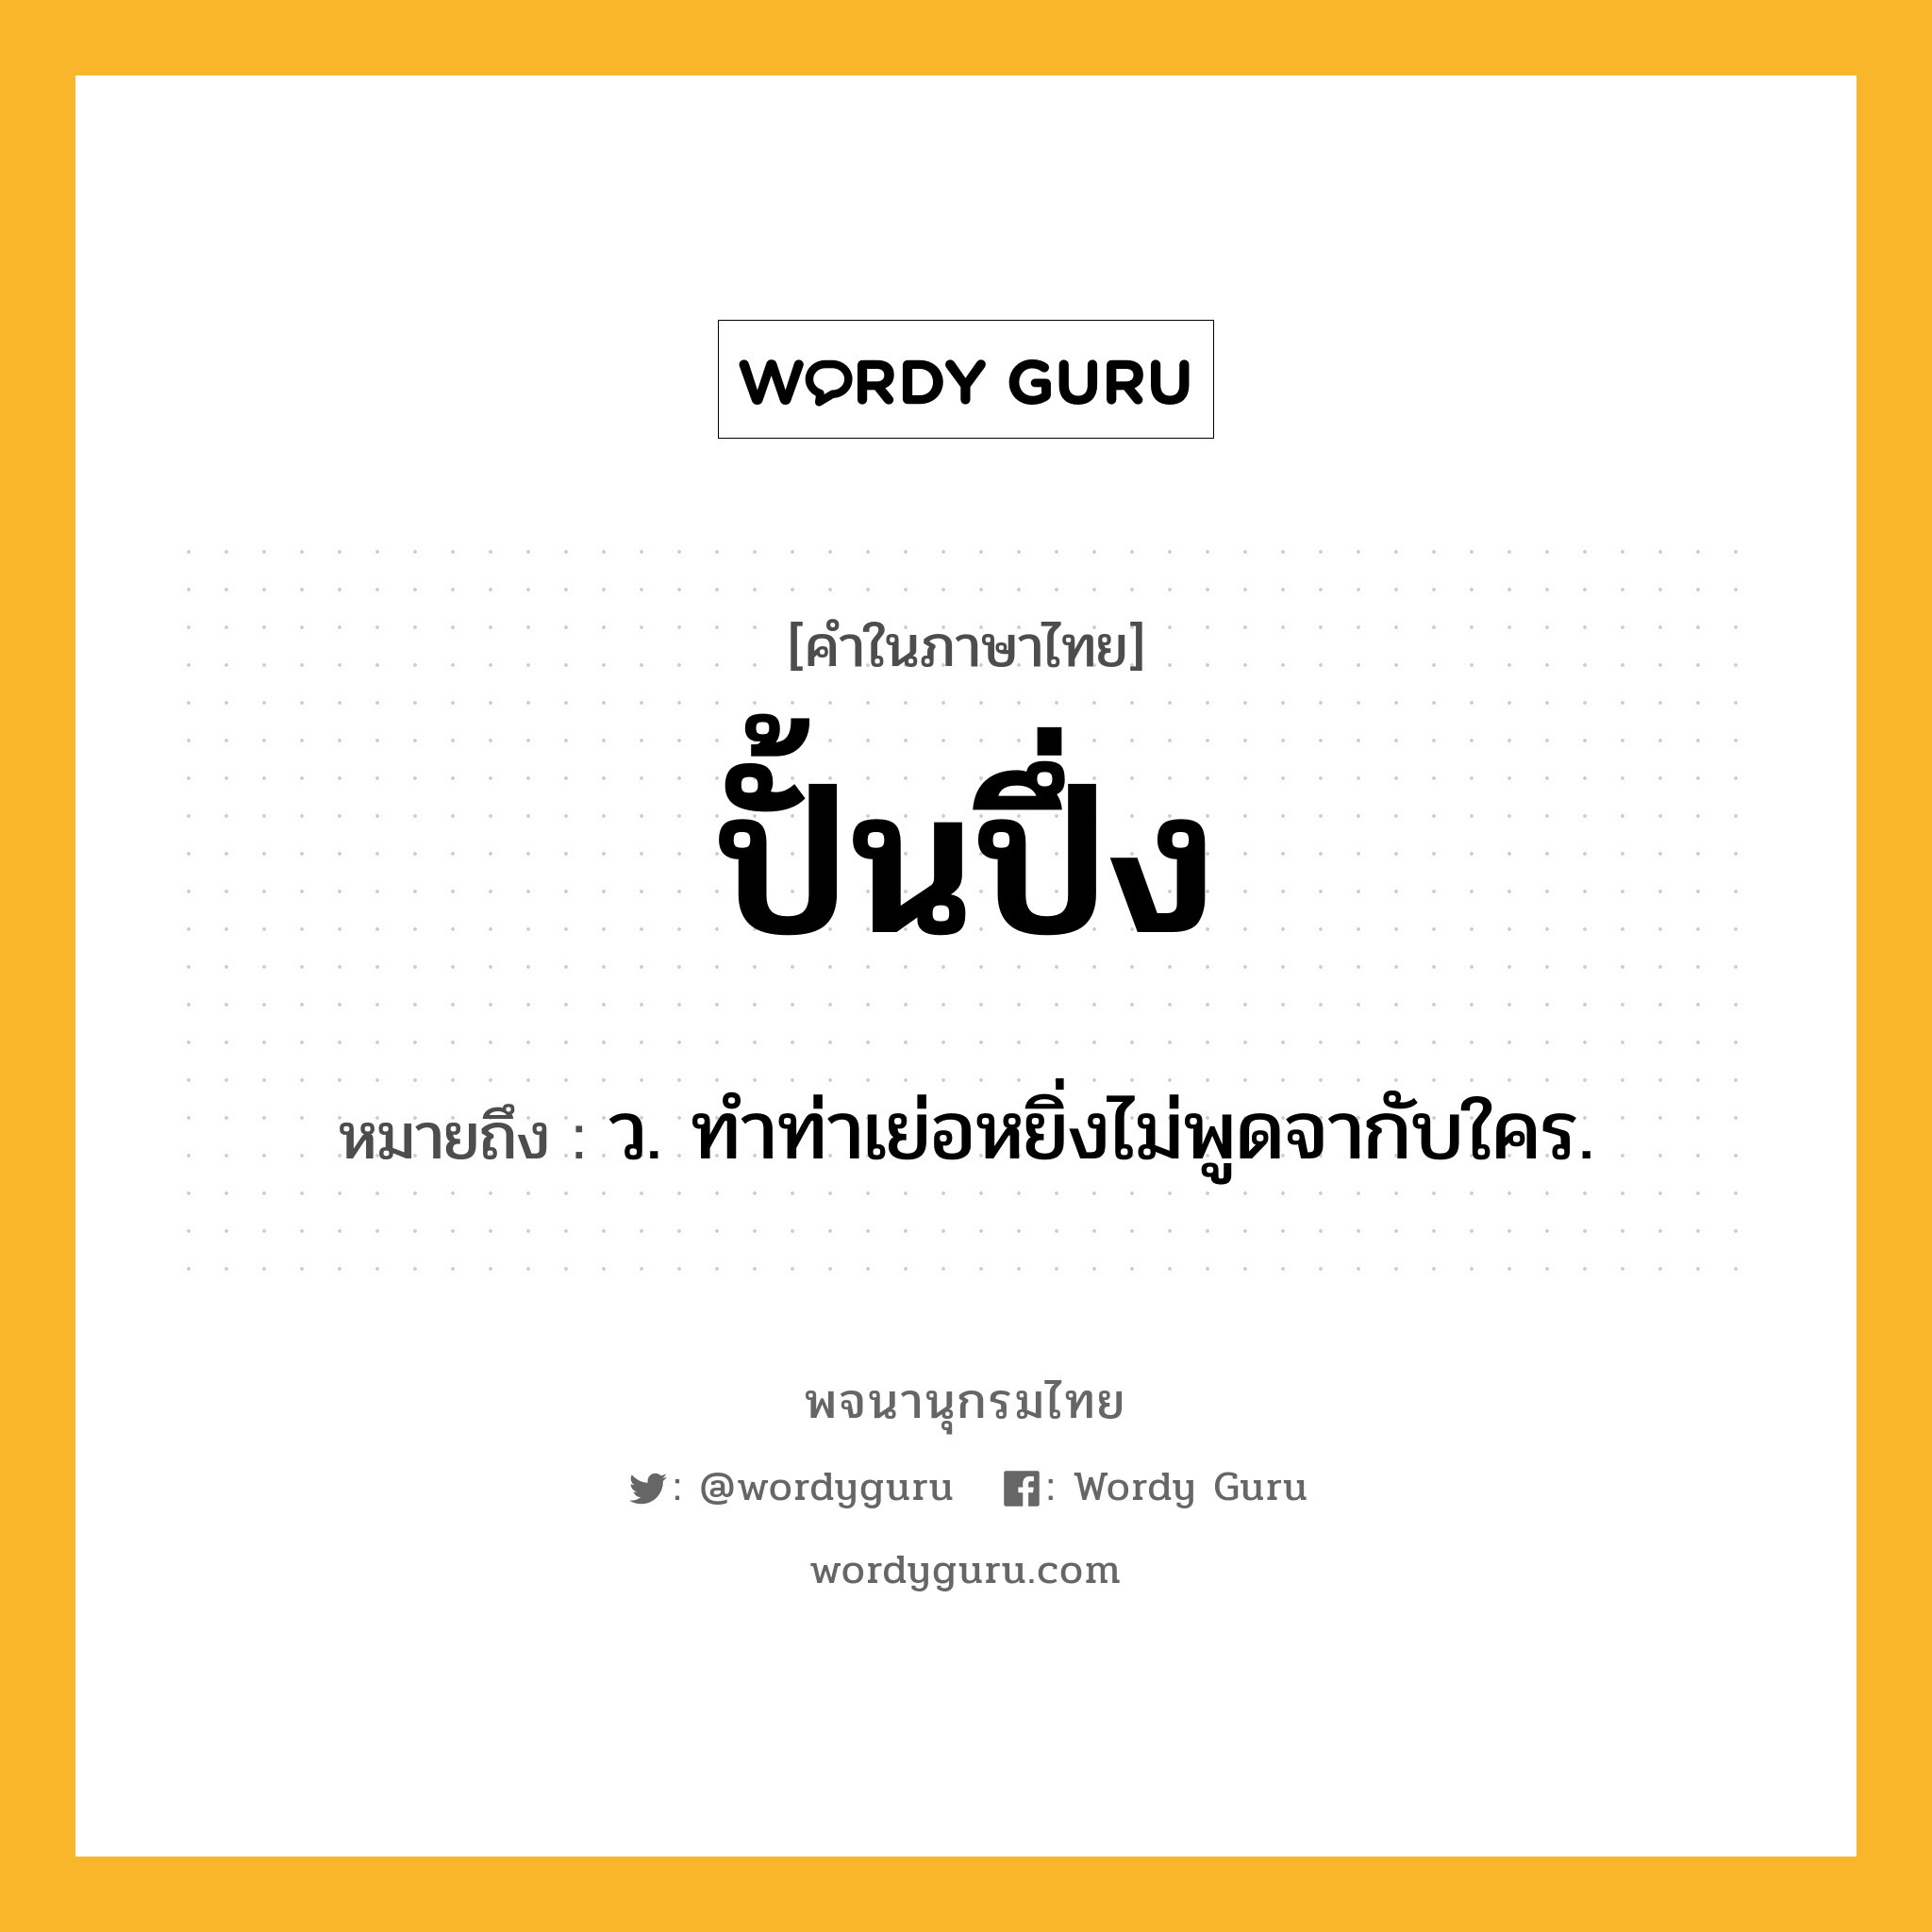 ปั้นปึ่ง หมายถึงอะไร?, คำในภาษาไทย ปั้นปึ่ง หมายถึง ว. ทำท่าเย่อหยิ่งไม่พูดจากับใคร.